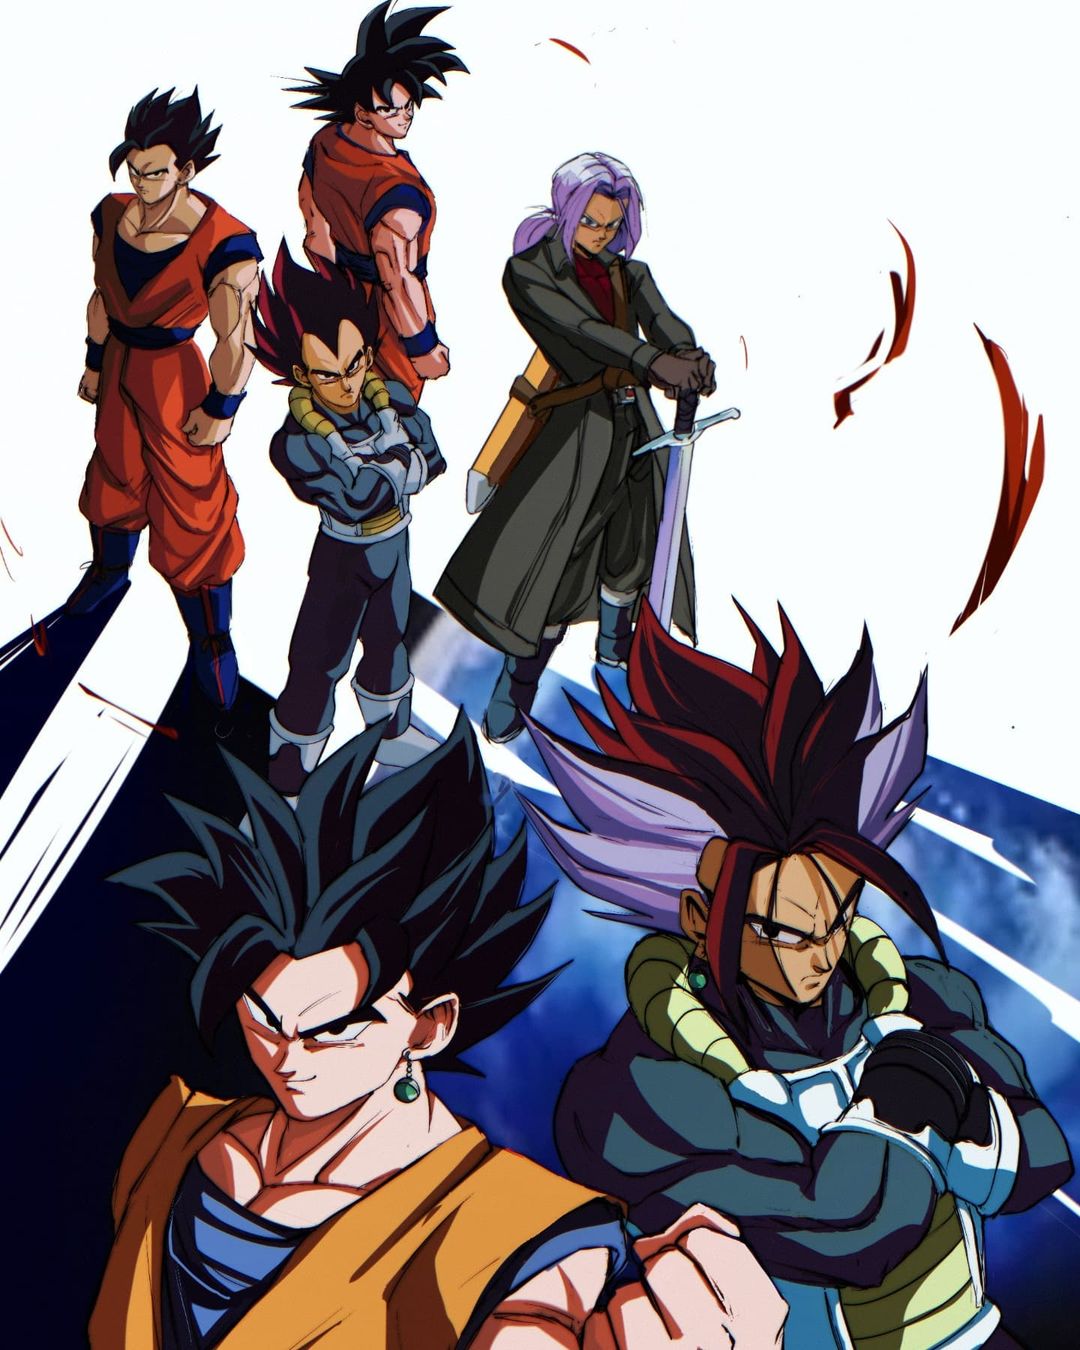 Fanart revela fusão de Goku e Gohan, e Vegeta e Trunks